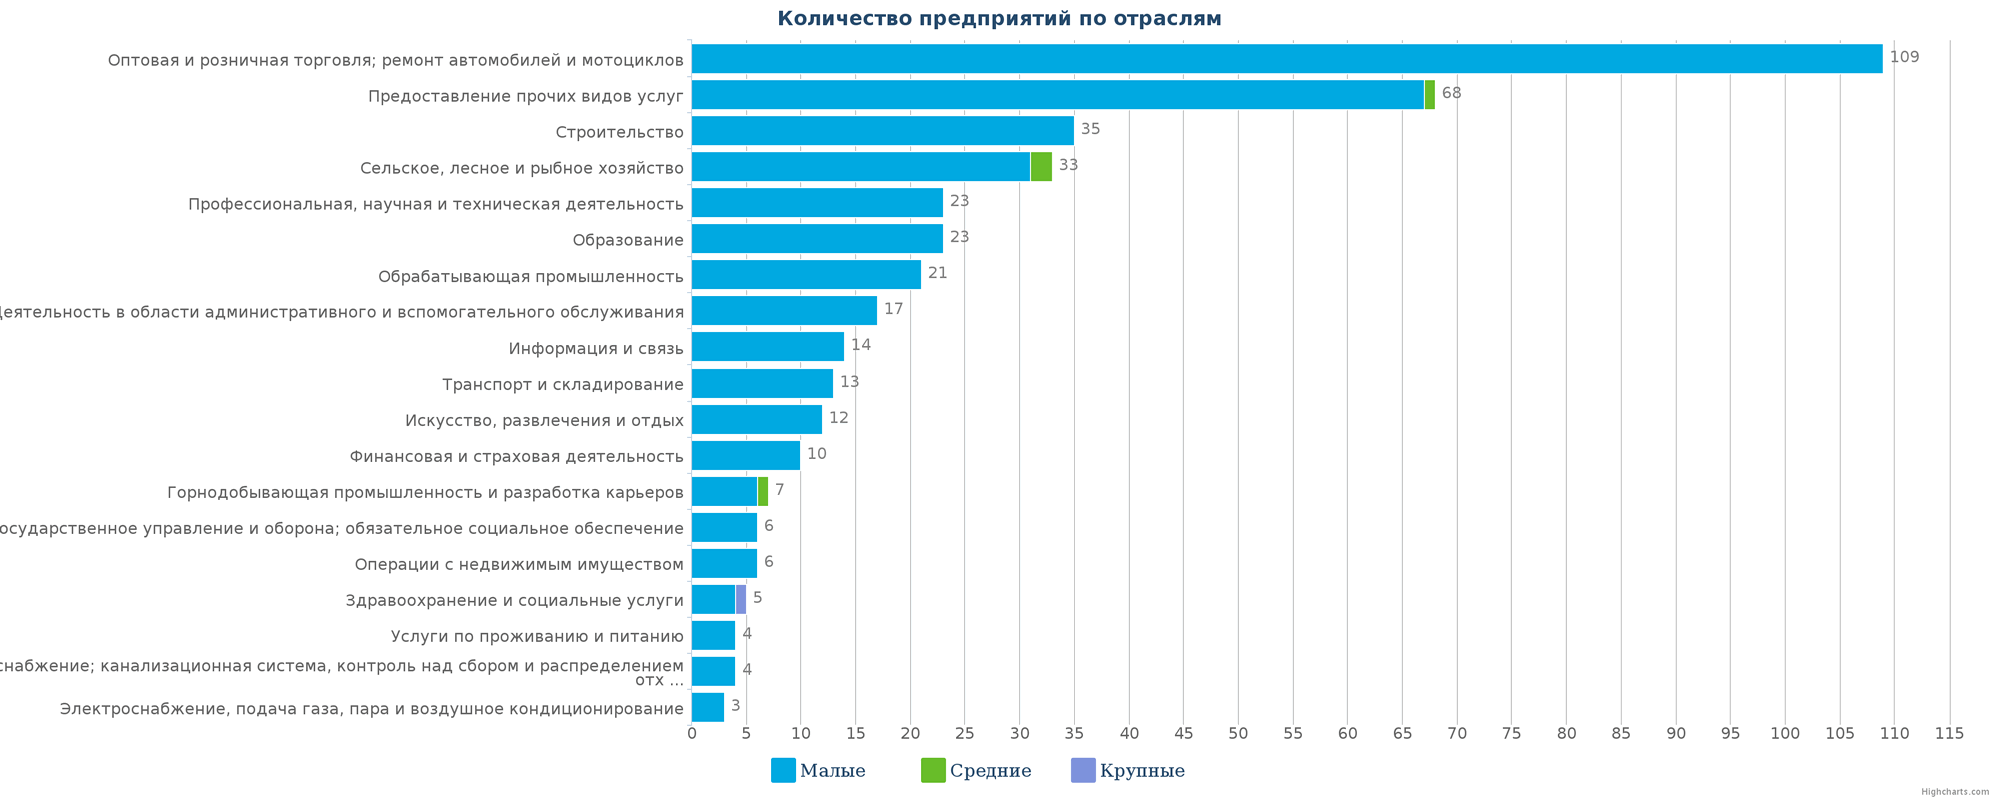 Новые предприятия в едином реестре Казахстана